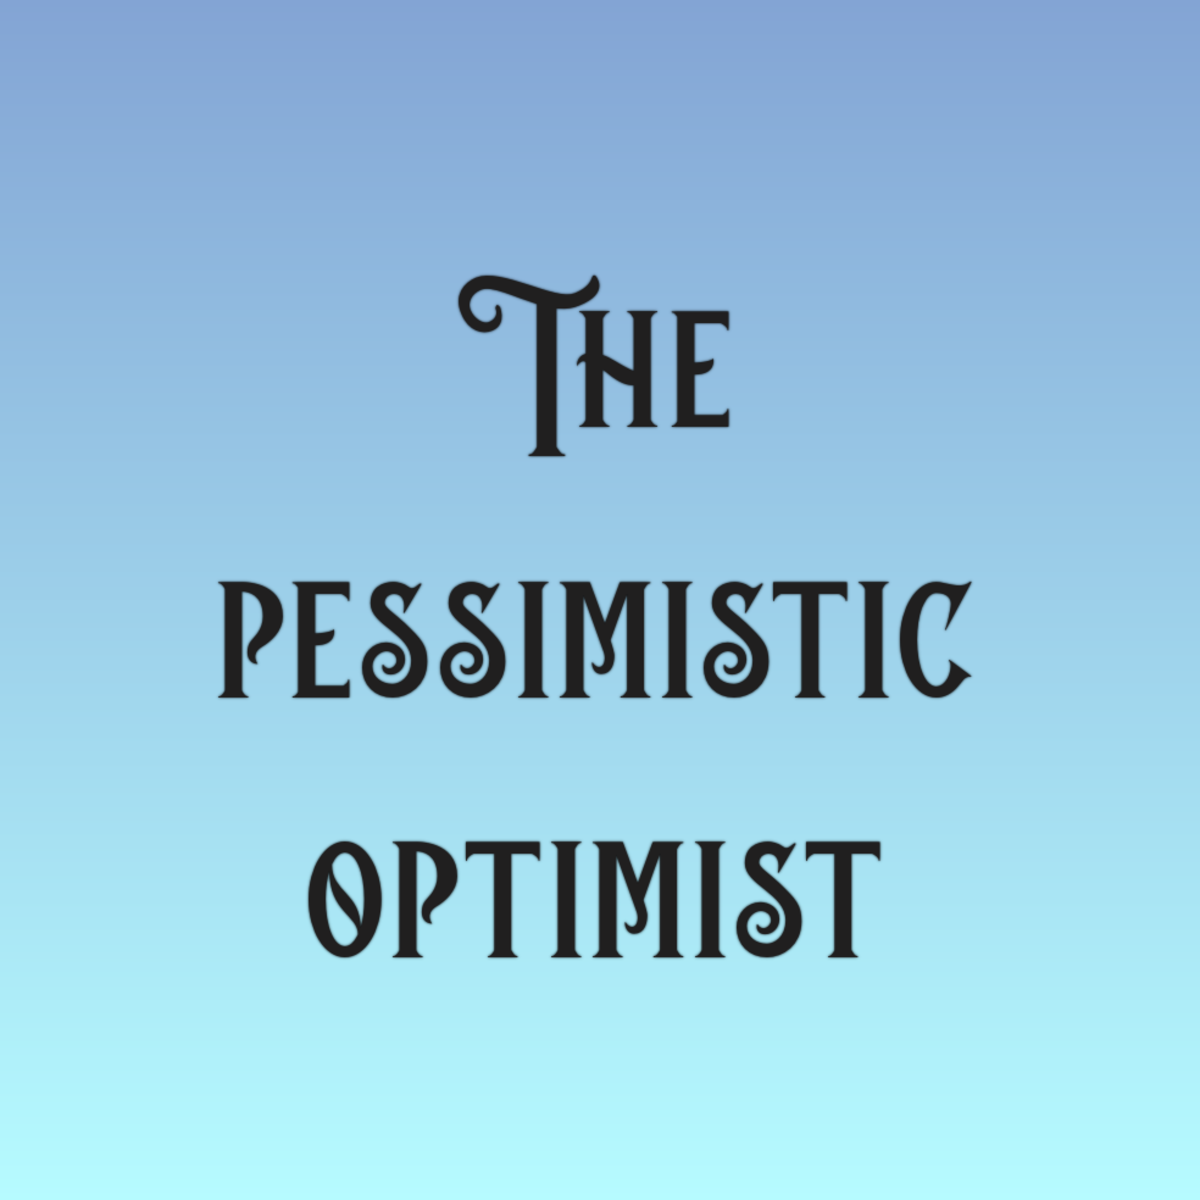 The Pessimistic Optimist.